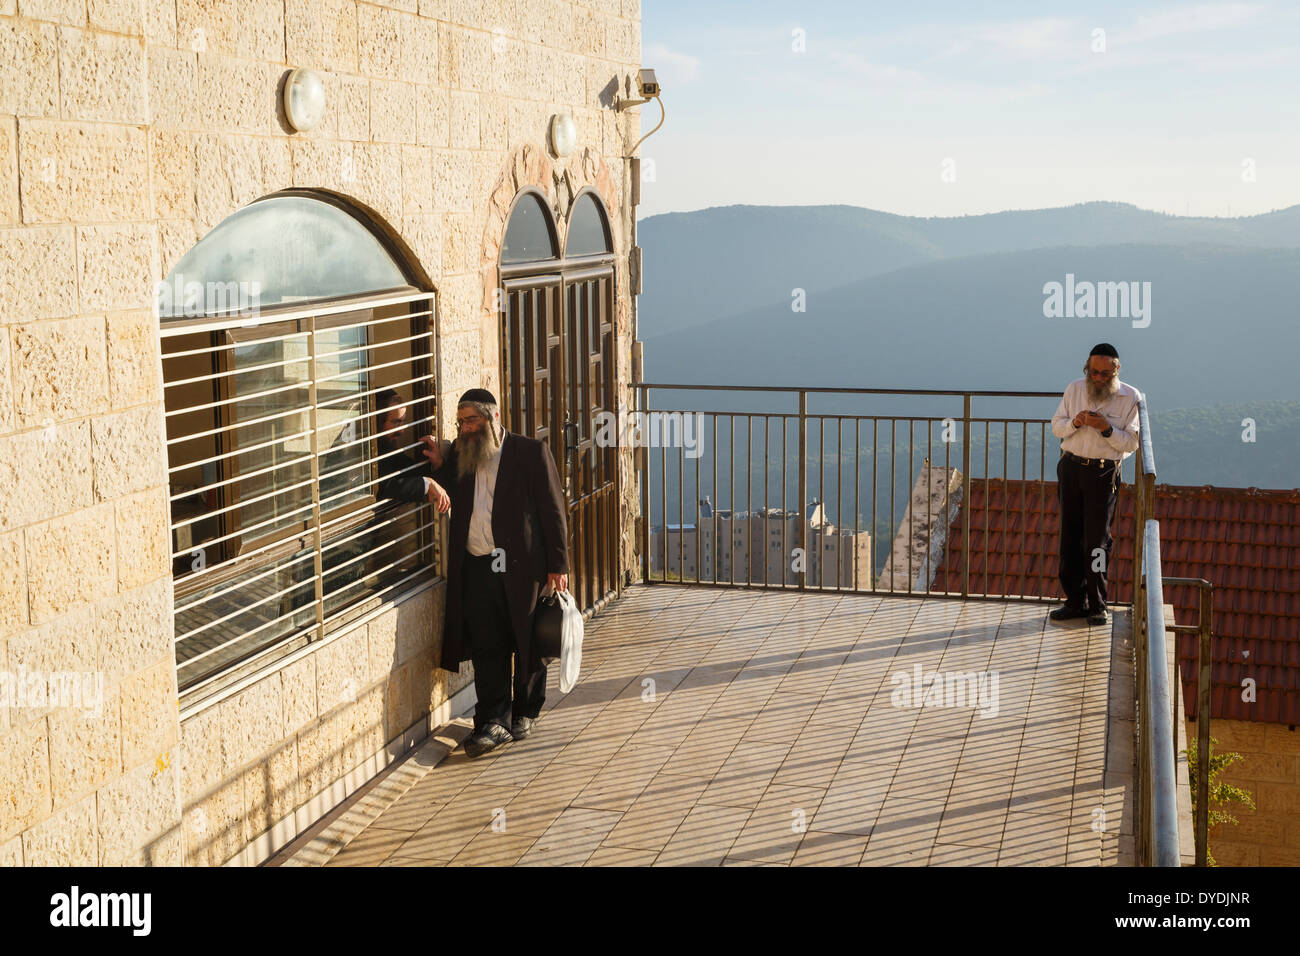 Les personnes juives orthodoxes en dehors d'une école talmudique, vieille ville de Safed, Galilée, Israël. Banque D'Images